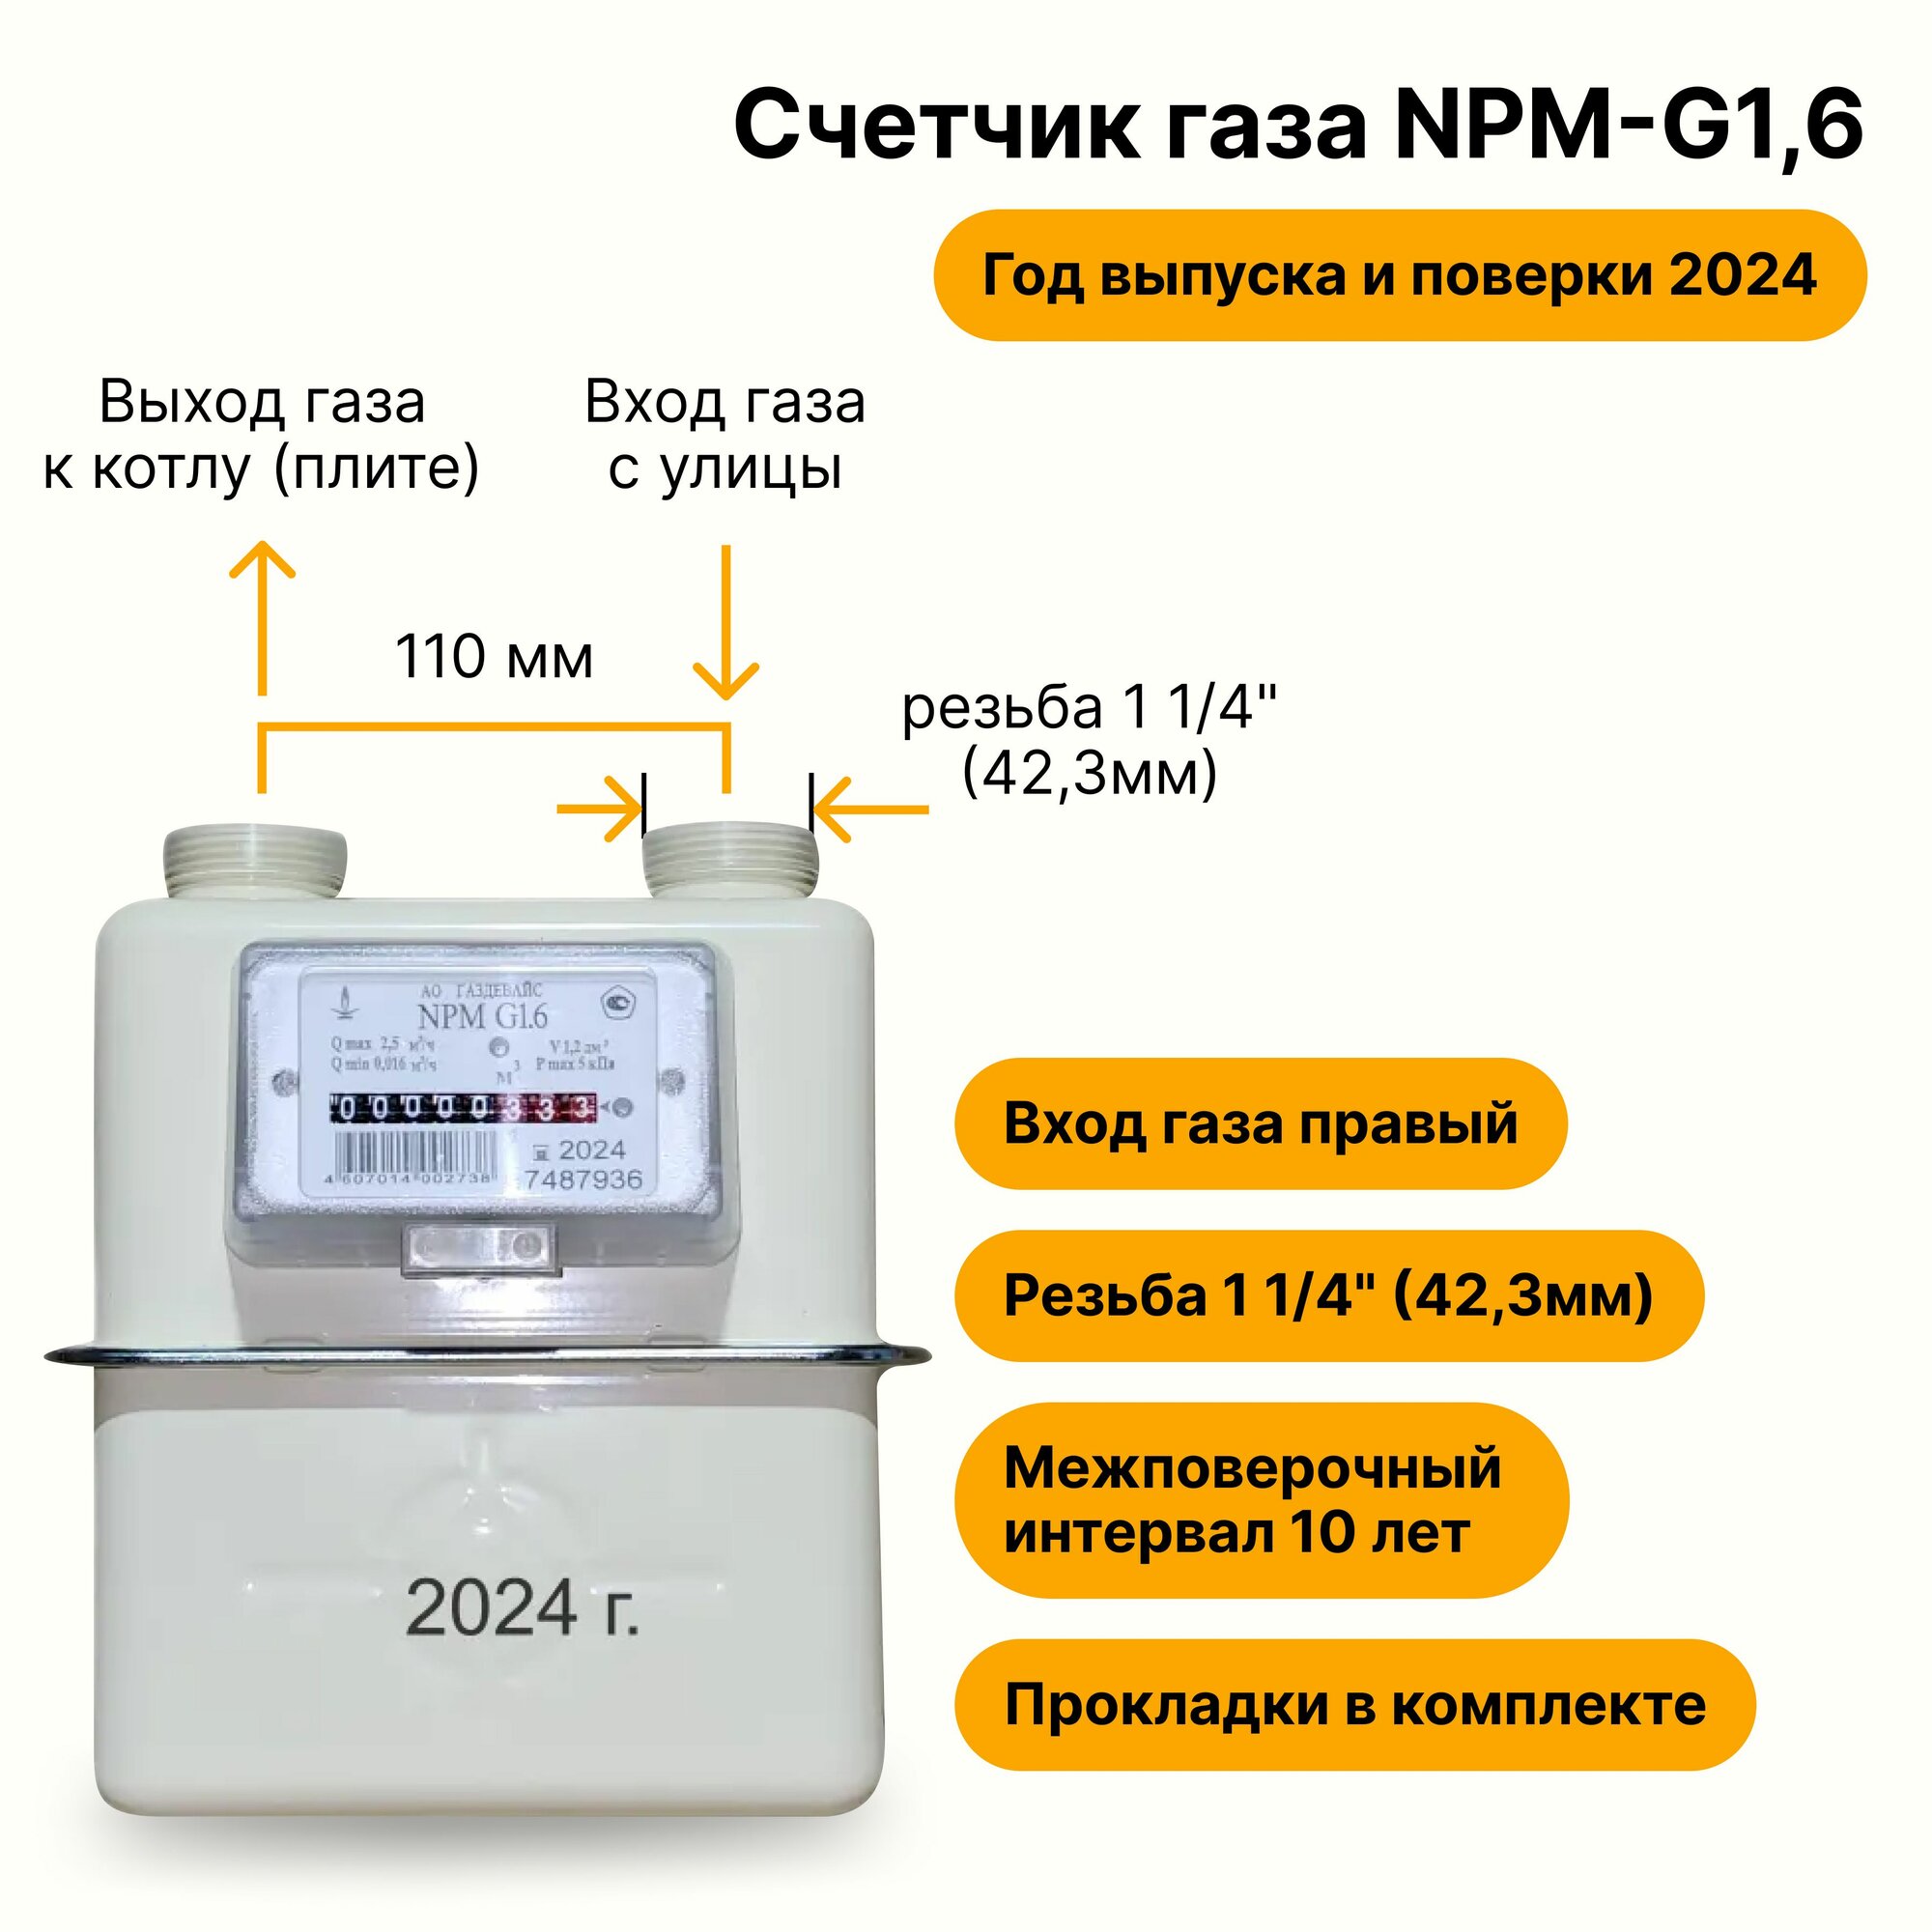 NPM-G1,6 (вход газа <--правый, резьба 1 1/4", прокладки В комплекте) 2024 года выпуска и поверки